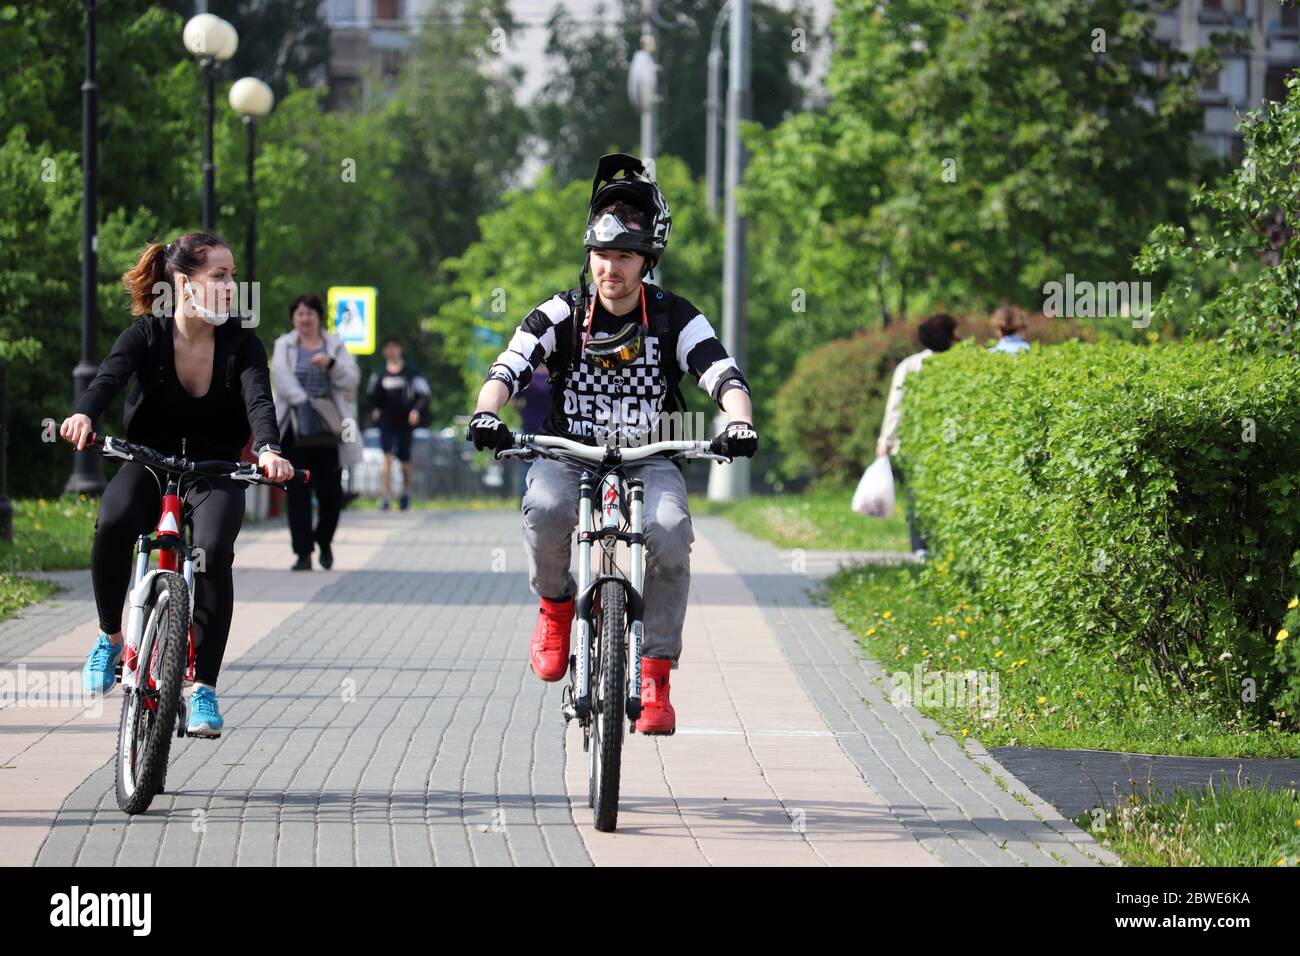 Glückliches Paar Fahrrad fahren in einem grünen Park auf Wanderern Hintergrund. Konzept des Radsports, Familienfreizeit, Welttag des Fahrrads Stockfoto